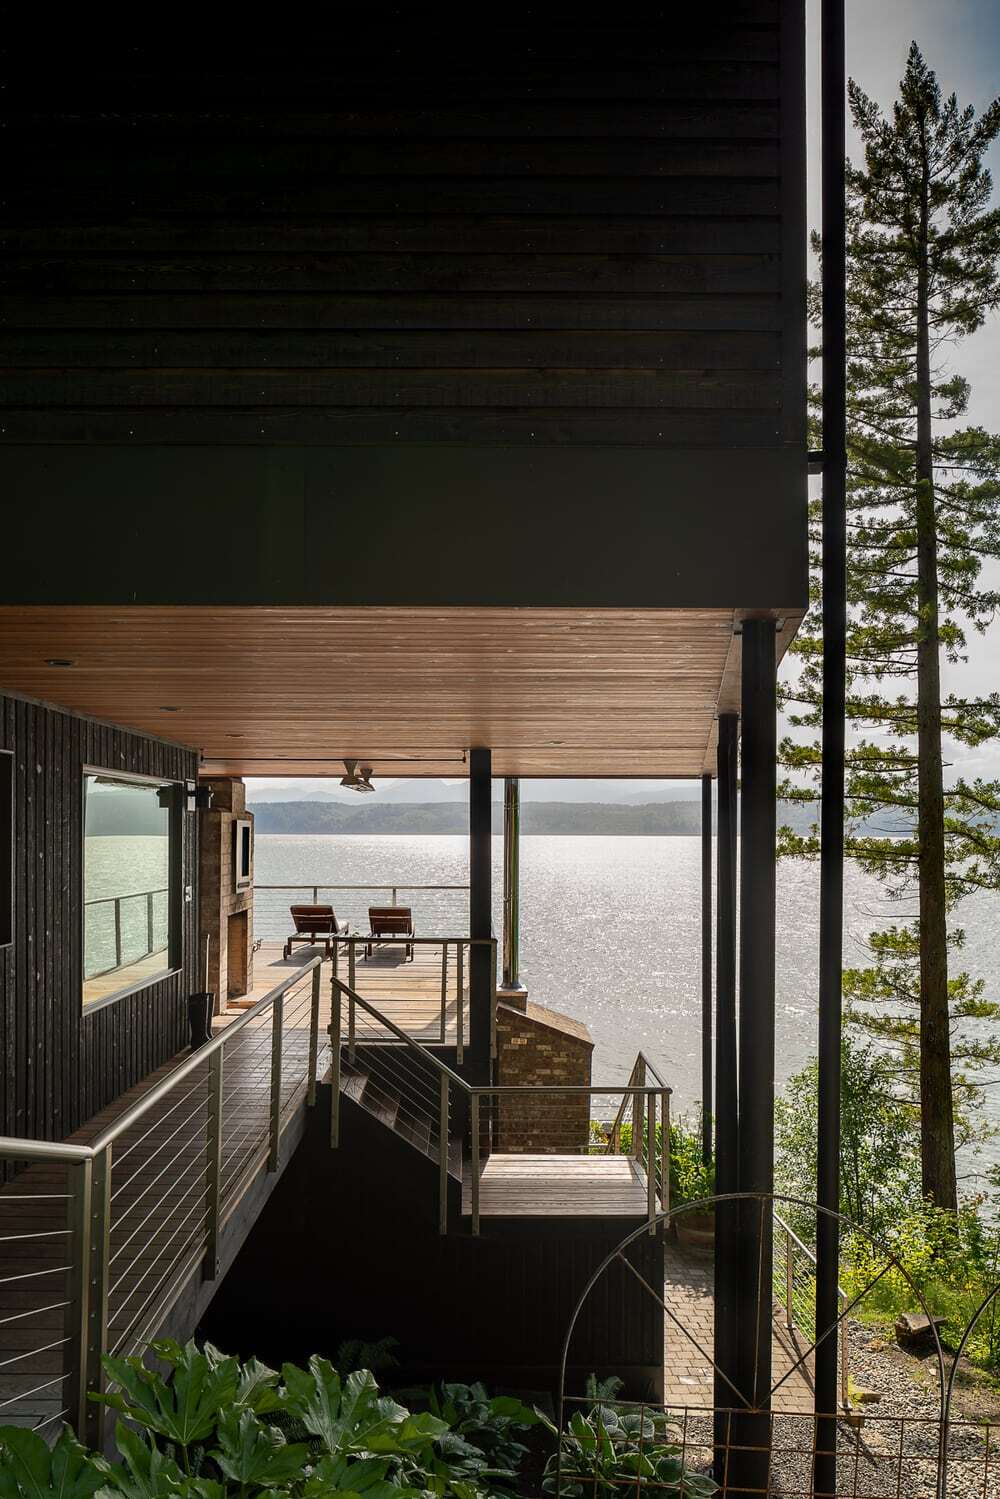 Aldo Beach House by Wittman Estes Architecture + Landscape